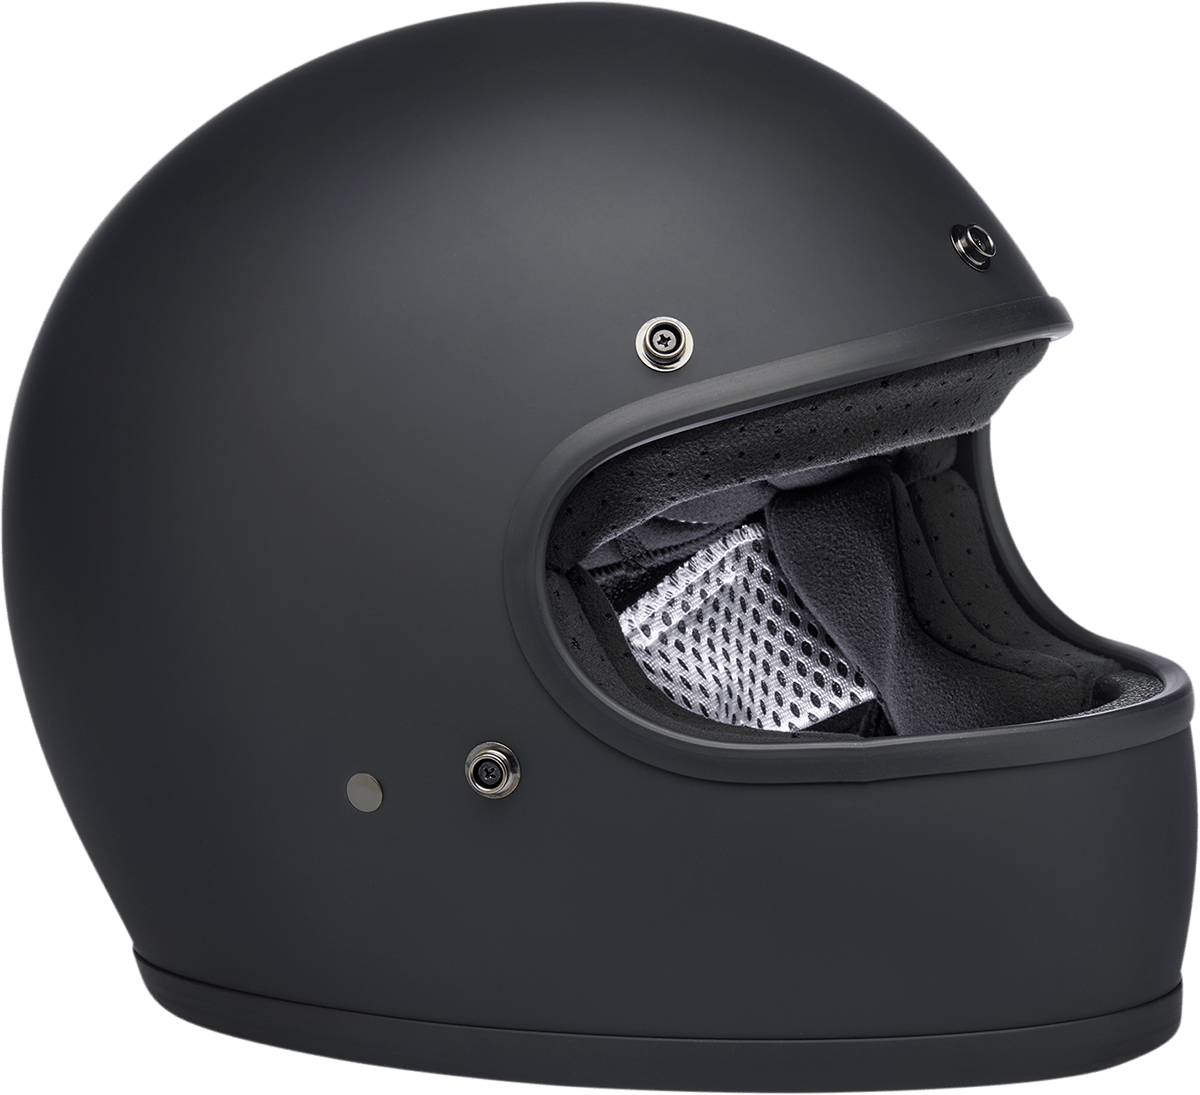 BILTWELL-Gringo Helmet / Factory-Helmet-MetalCore Harley Supply